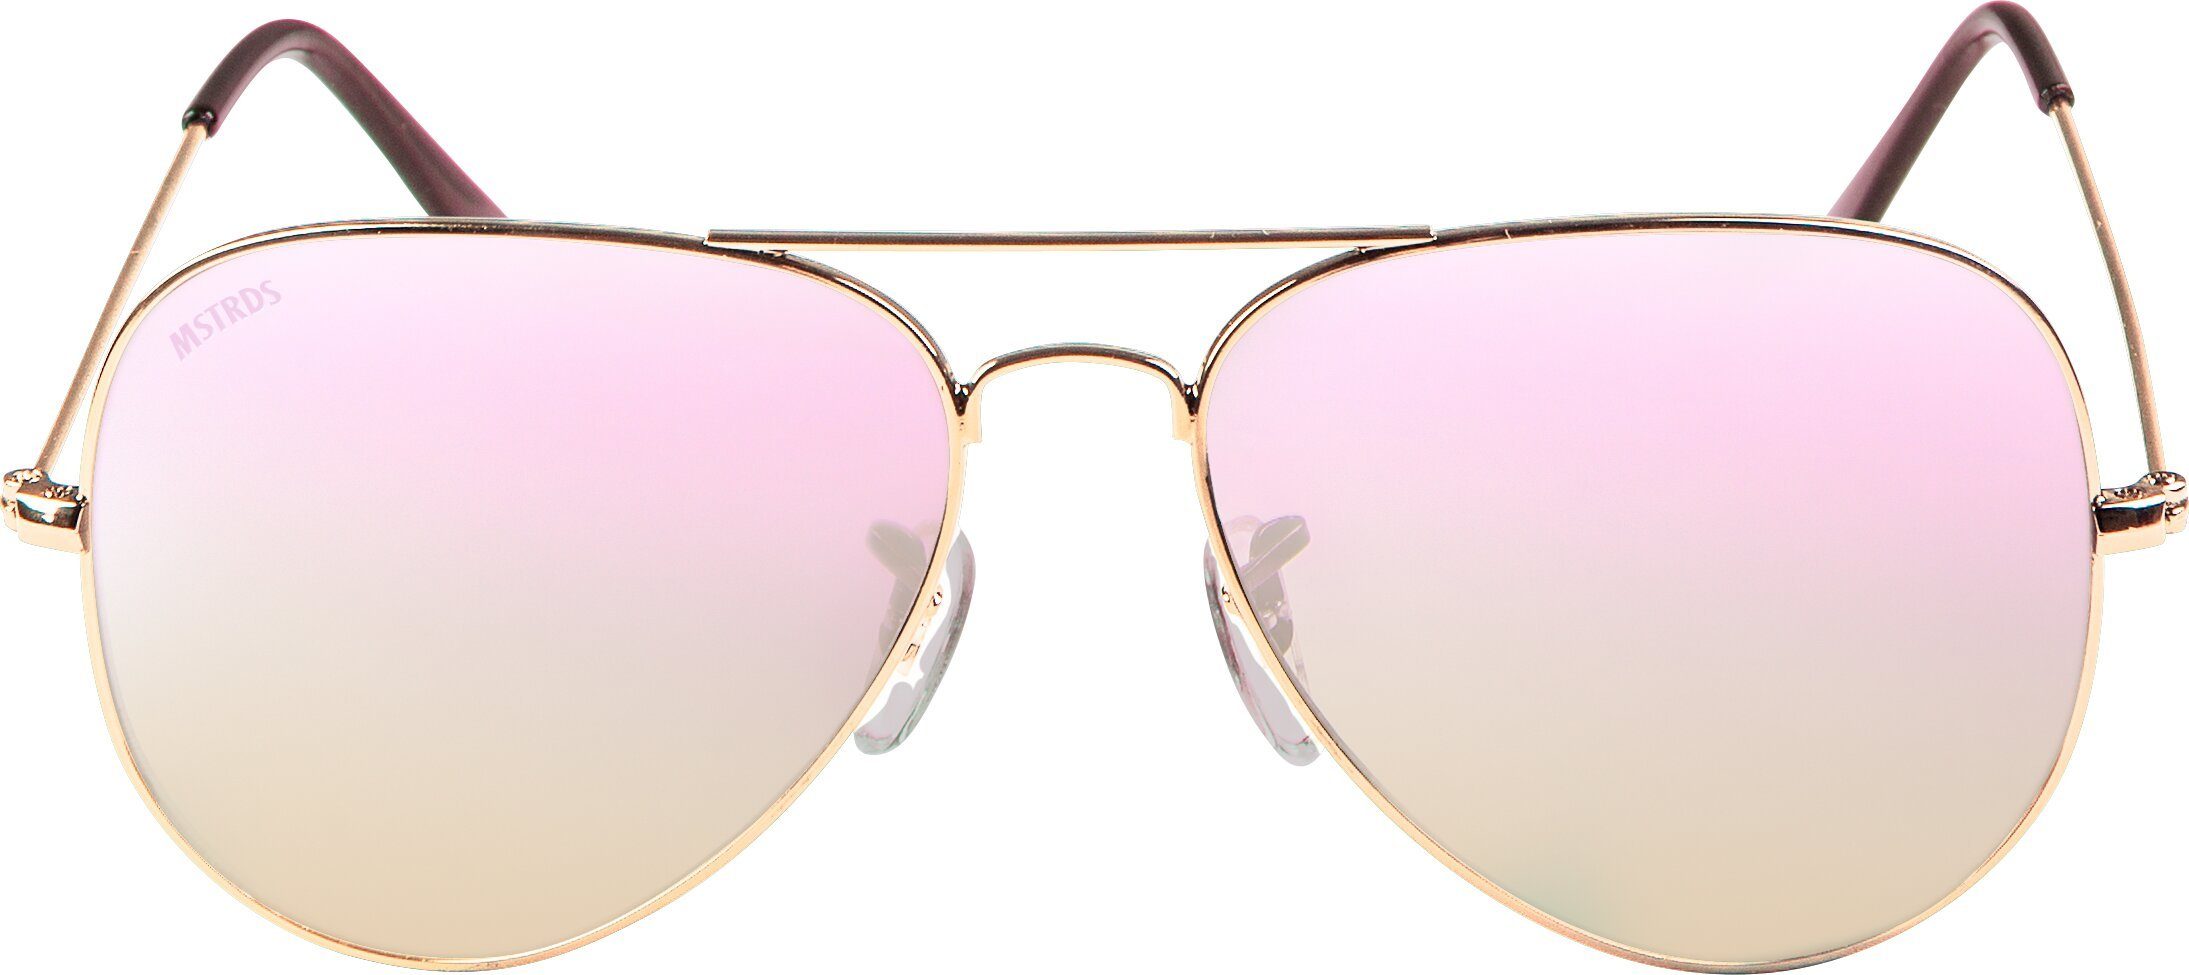 MSTRDS Sonnenbrille Accessoires PureAv gold/rosé Sunglasses